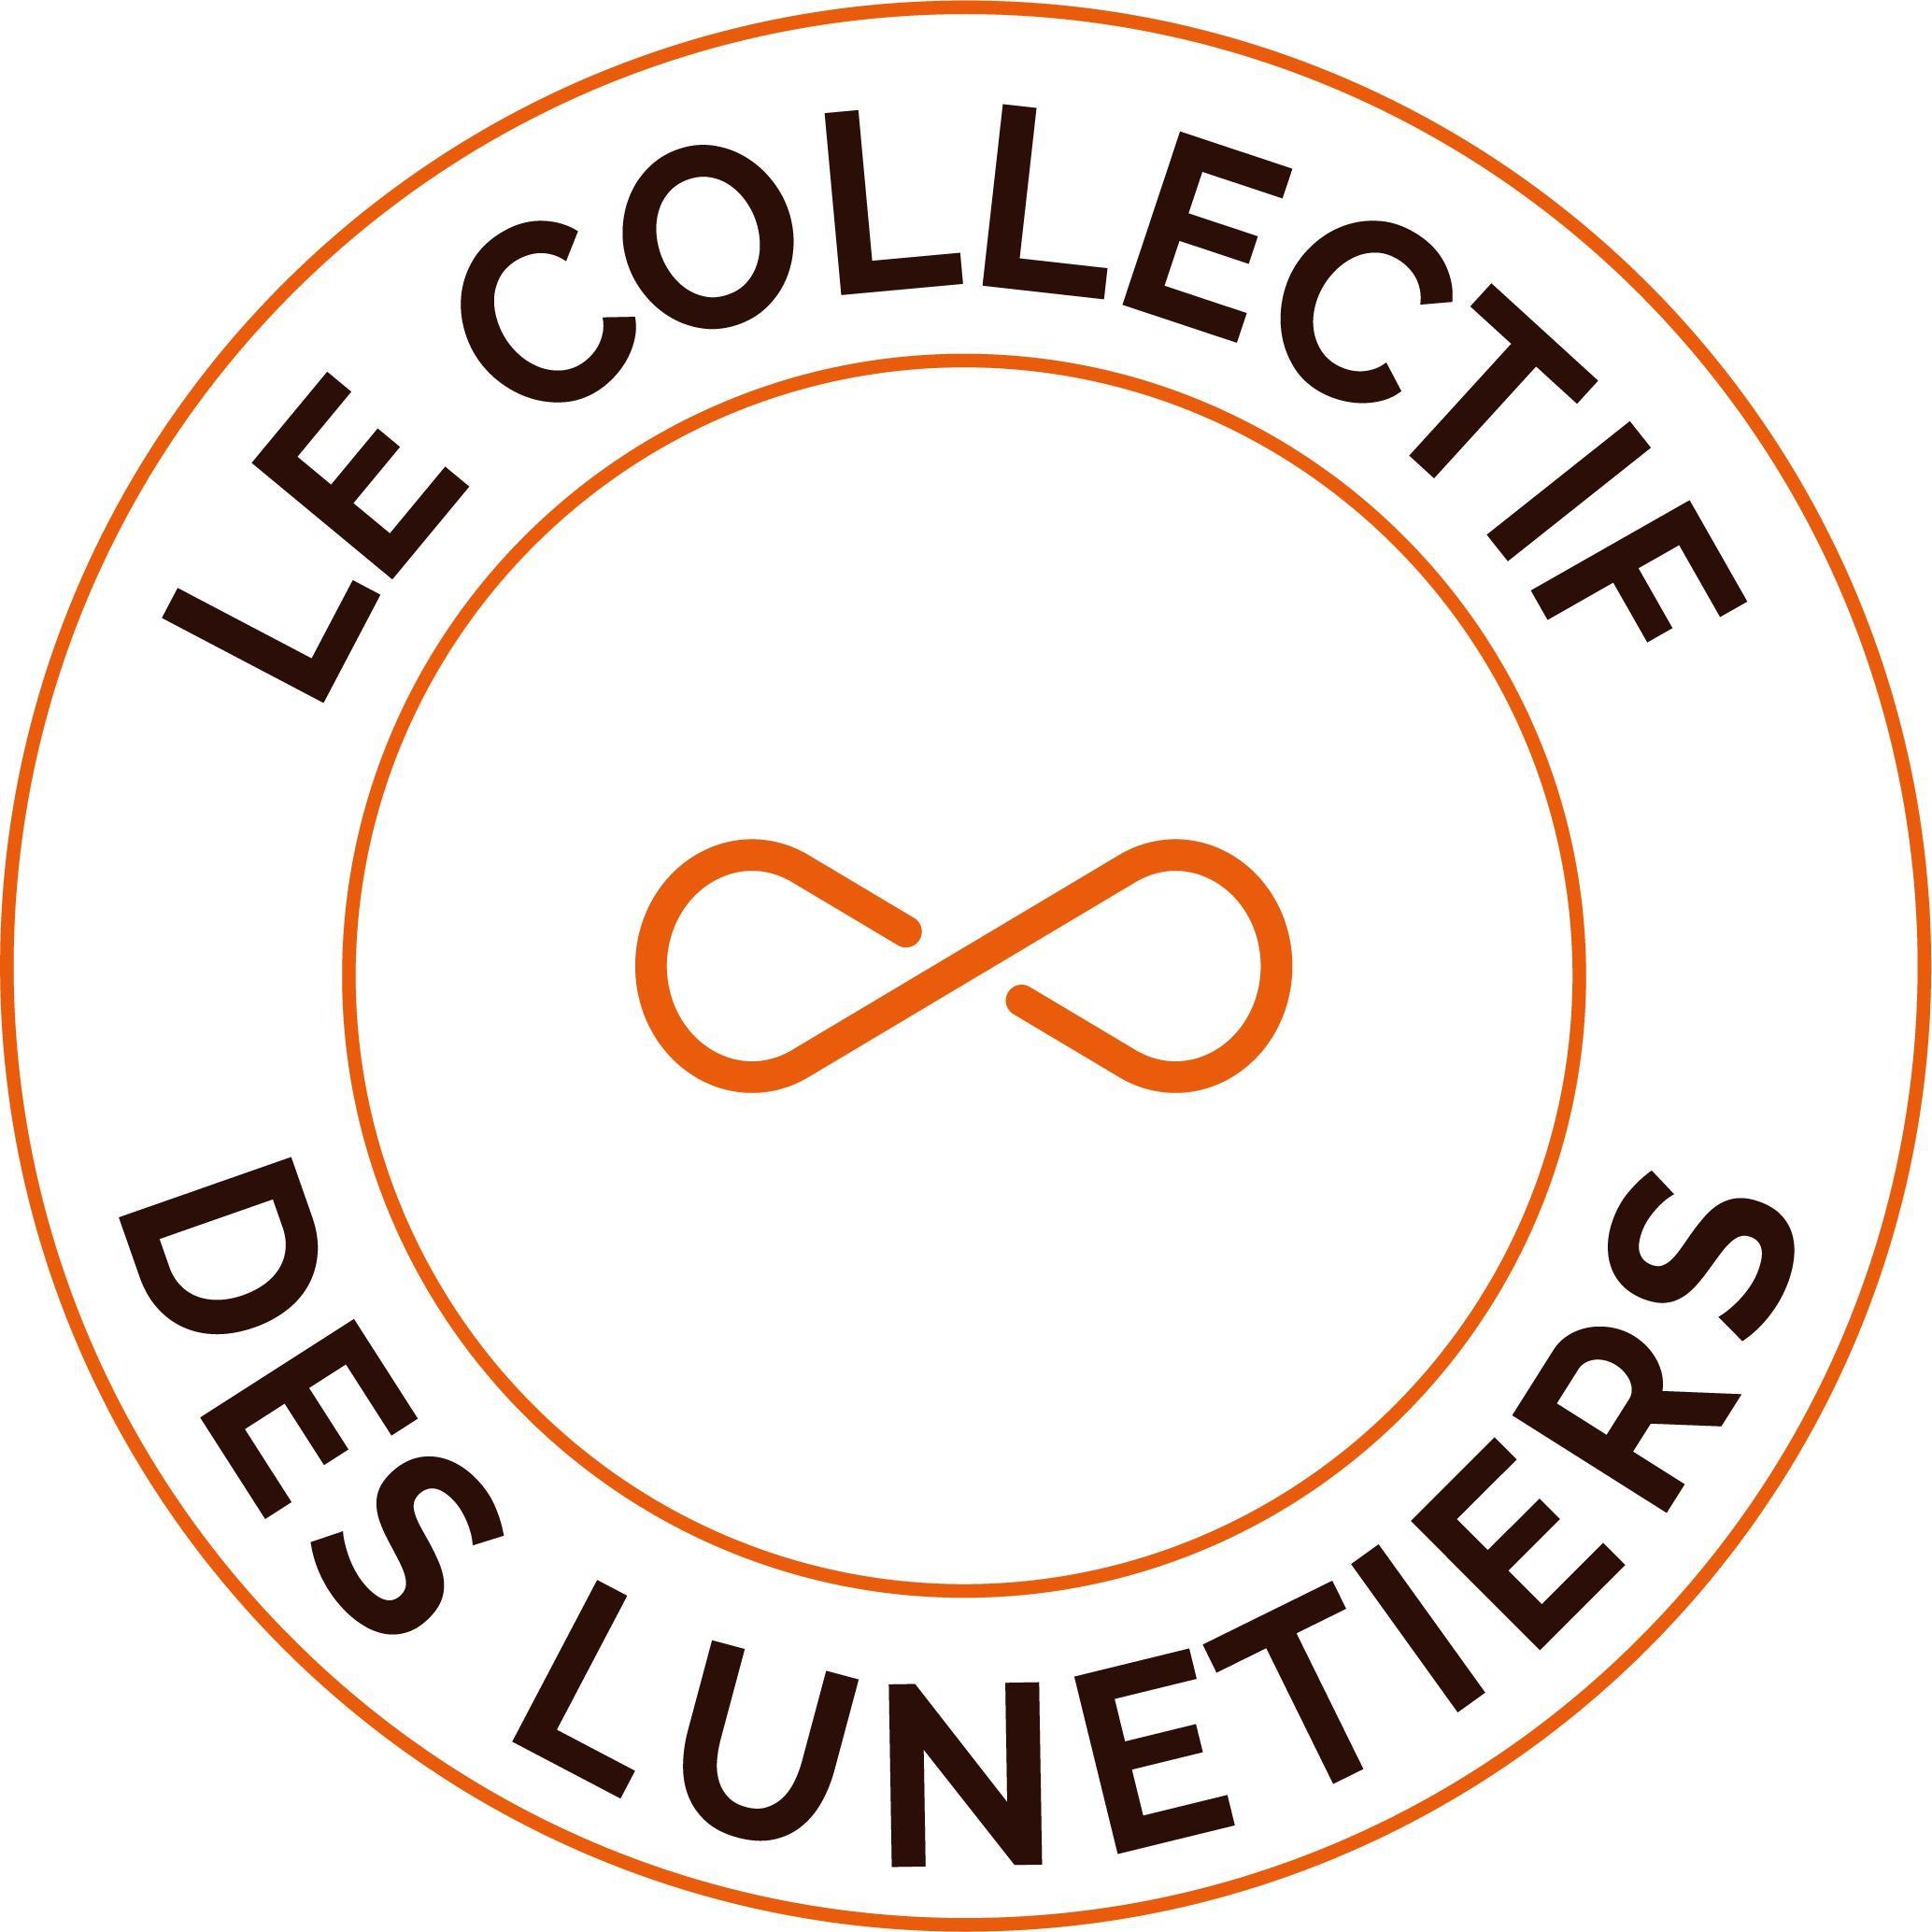 Le Collectif Des Lunetiers Saint Leu D'esserent